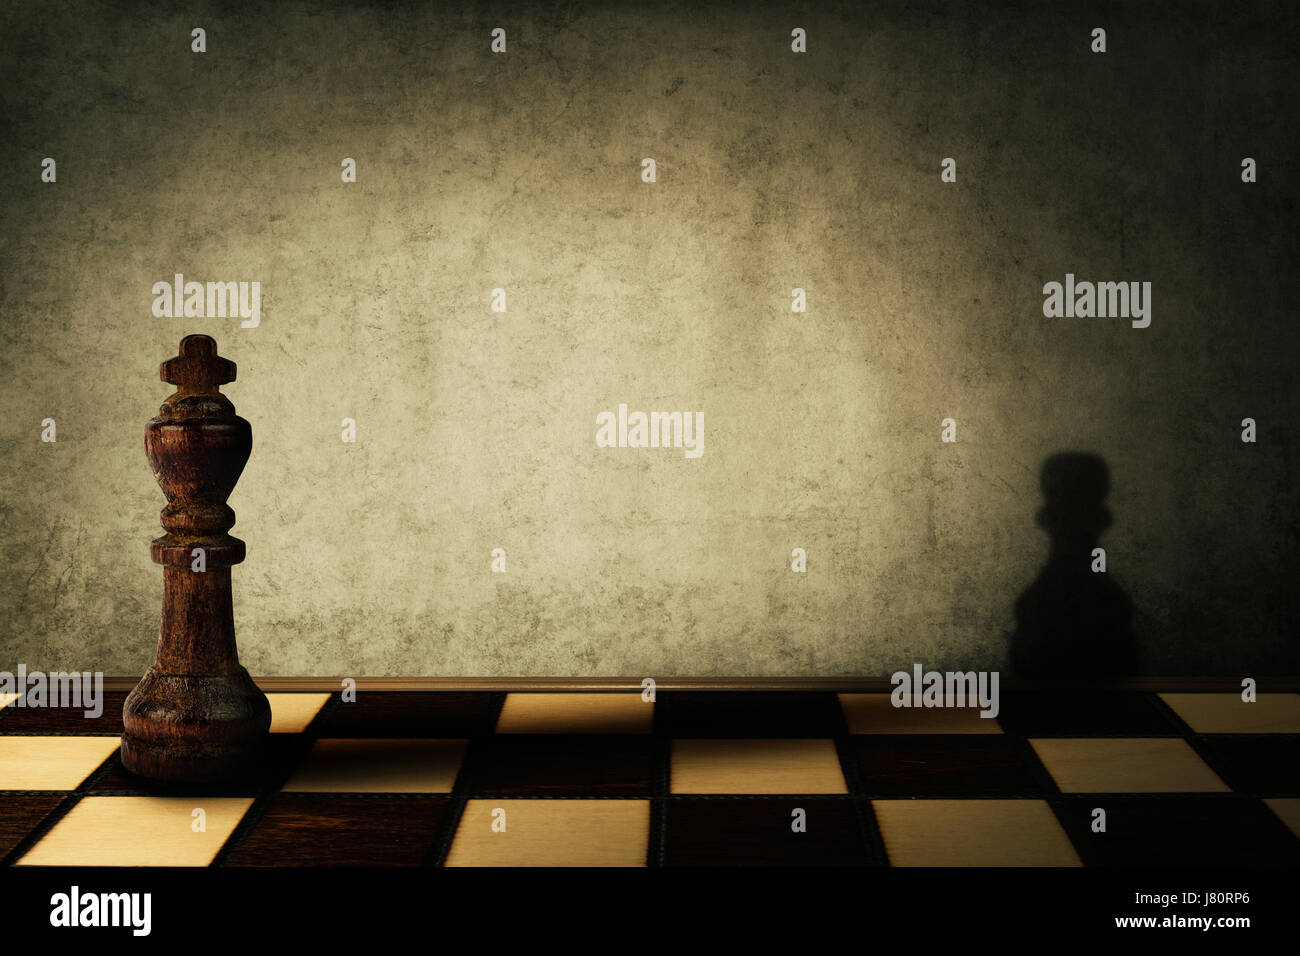 König Schachfigur wirft einen Schatten eines Bauern auf eine Betonwand. Komplex und Misswirtschaft Konzept. Magische Verwandlung. Stockfoto